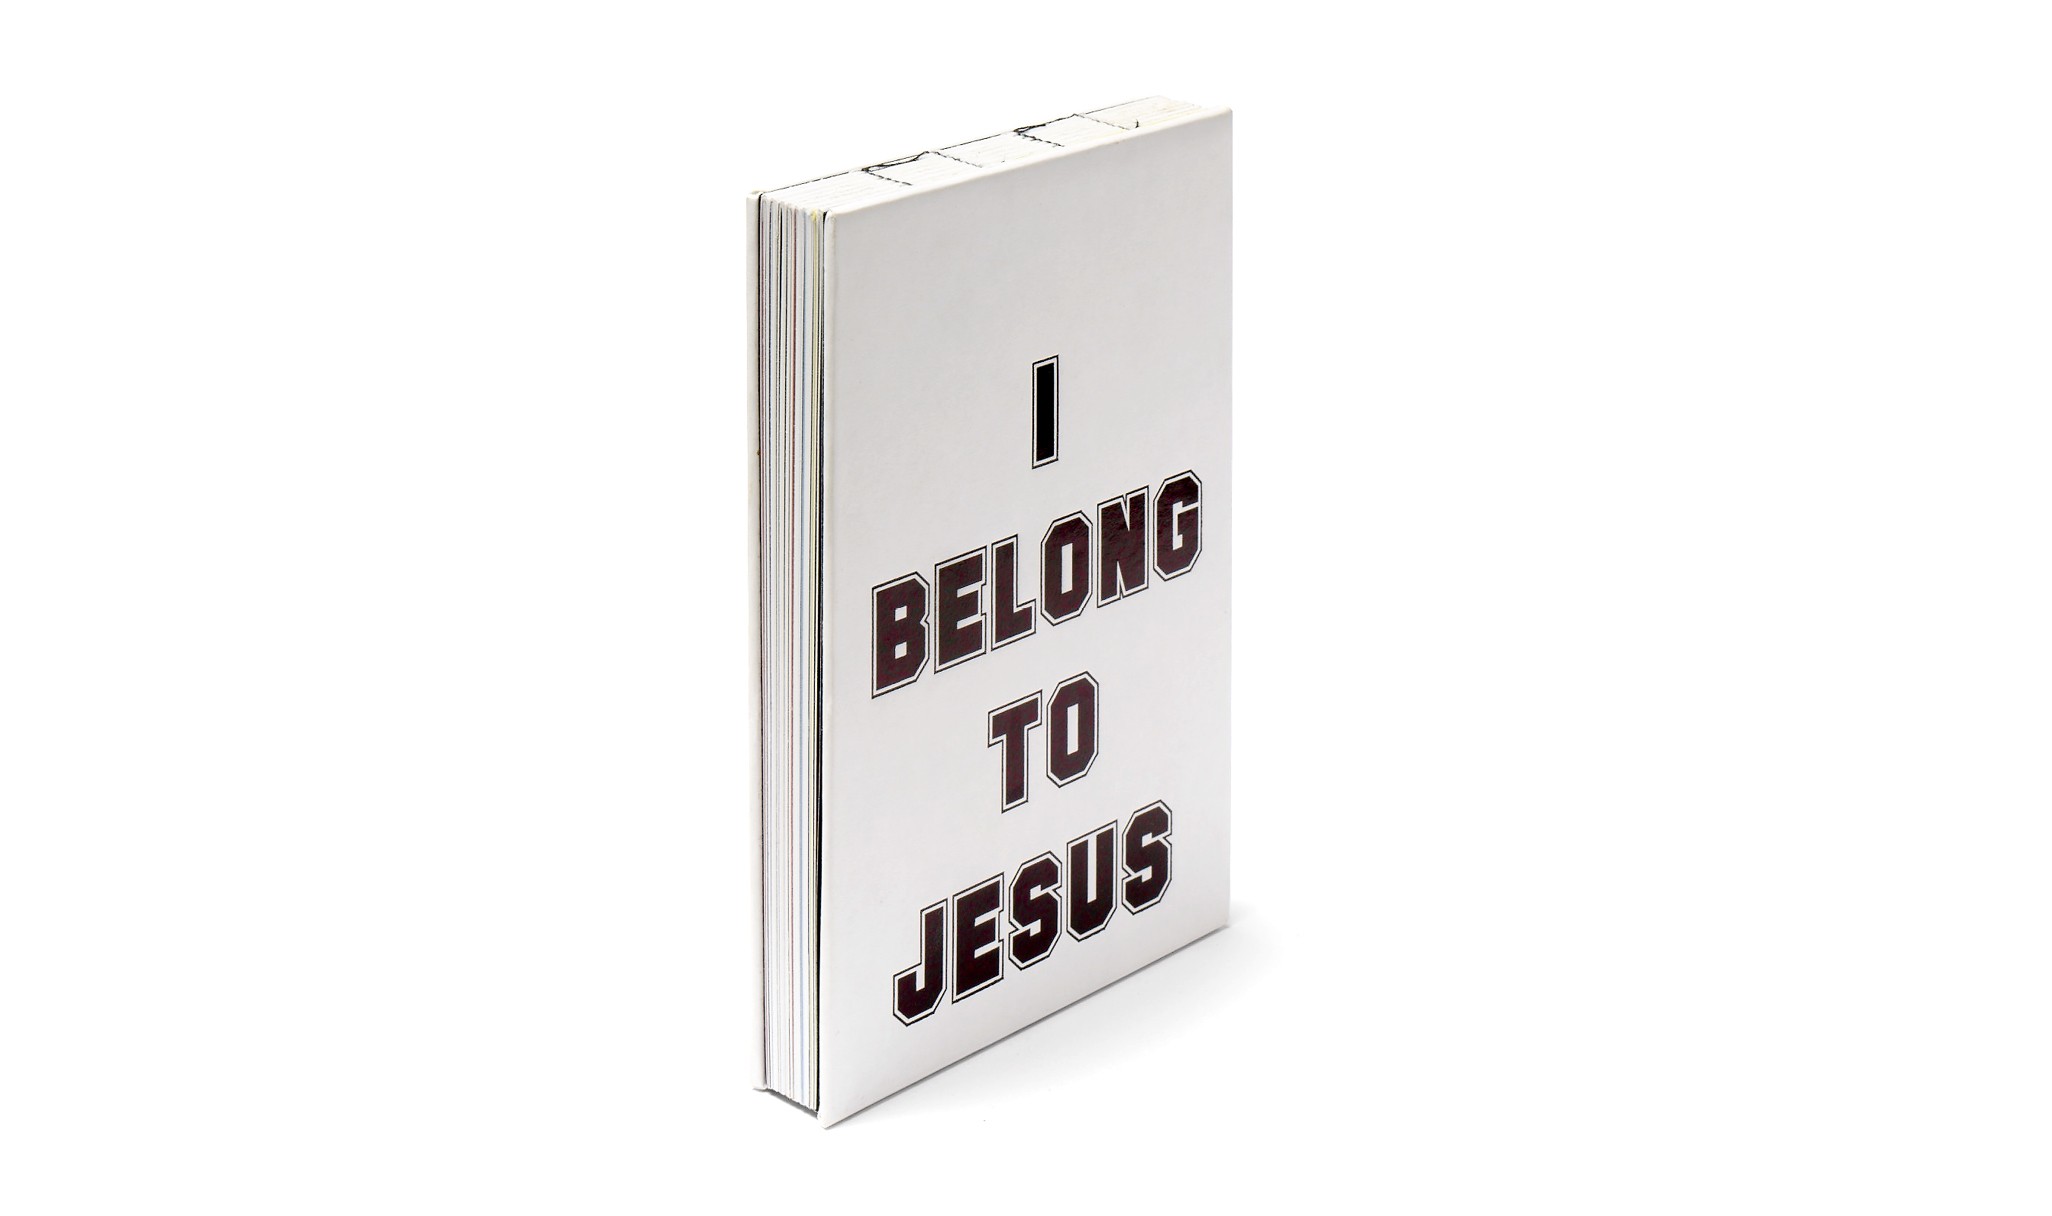 I belong to Jesus, 2016